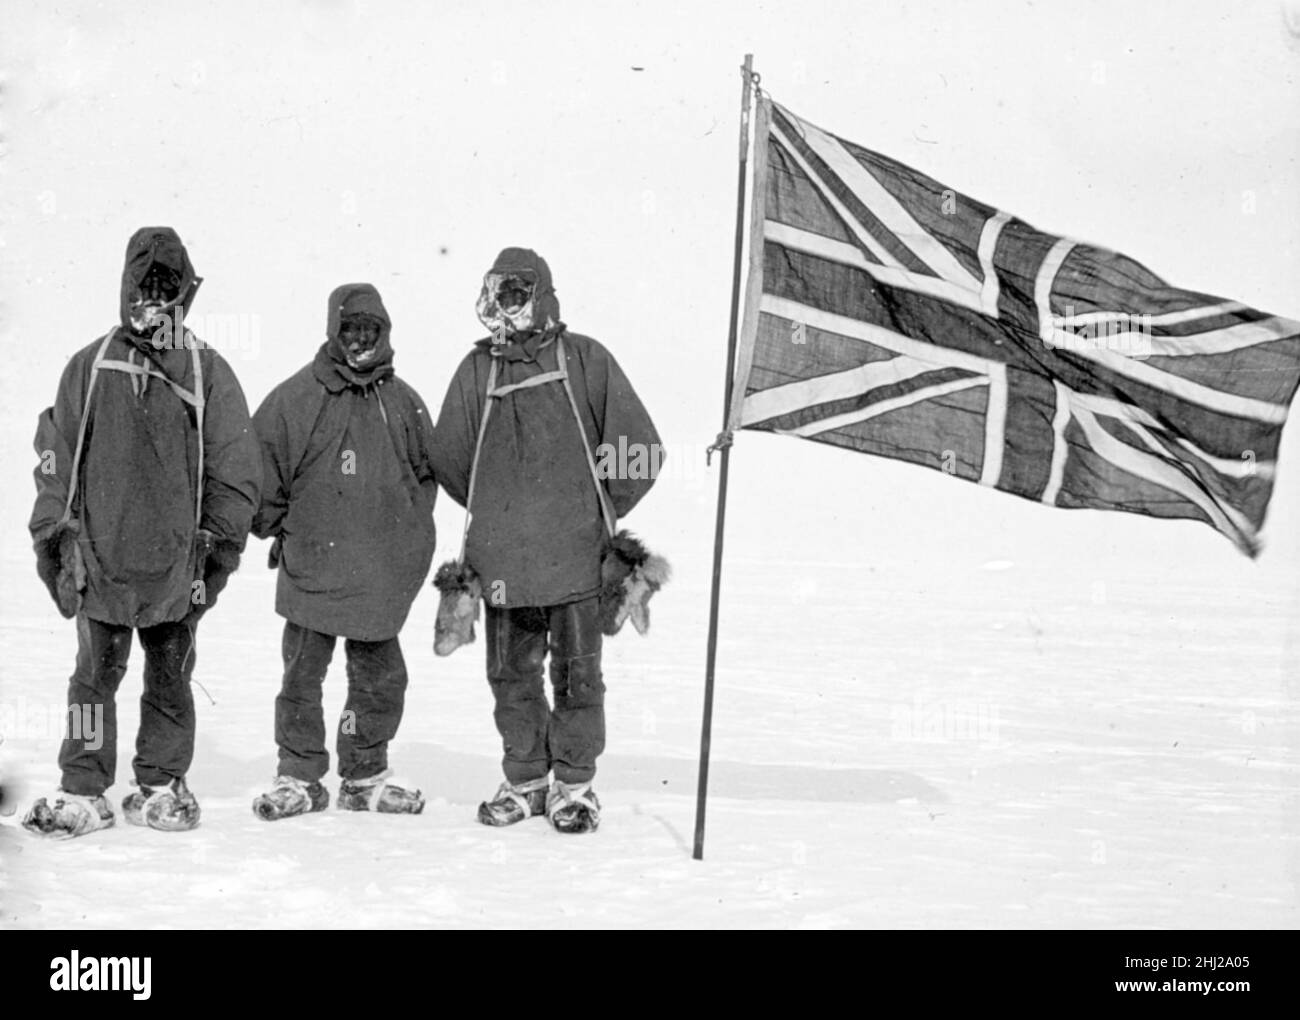 ERNEST SHACKLETON (1874-1922) explorateur antarctique anglo-irlandais.De gauche Eric Marshall, Frank Wild et Shackleton à leur latitude sud la plus éloignée de 88 deg 23 min le 9 janvier 1909 pendant l'expédition Nimrod. Banque D'Images